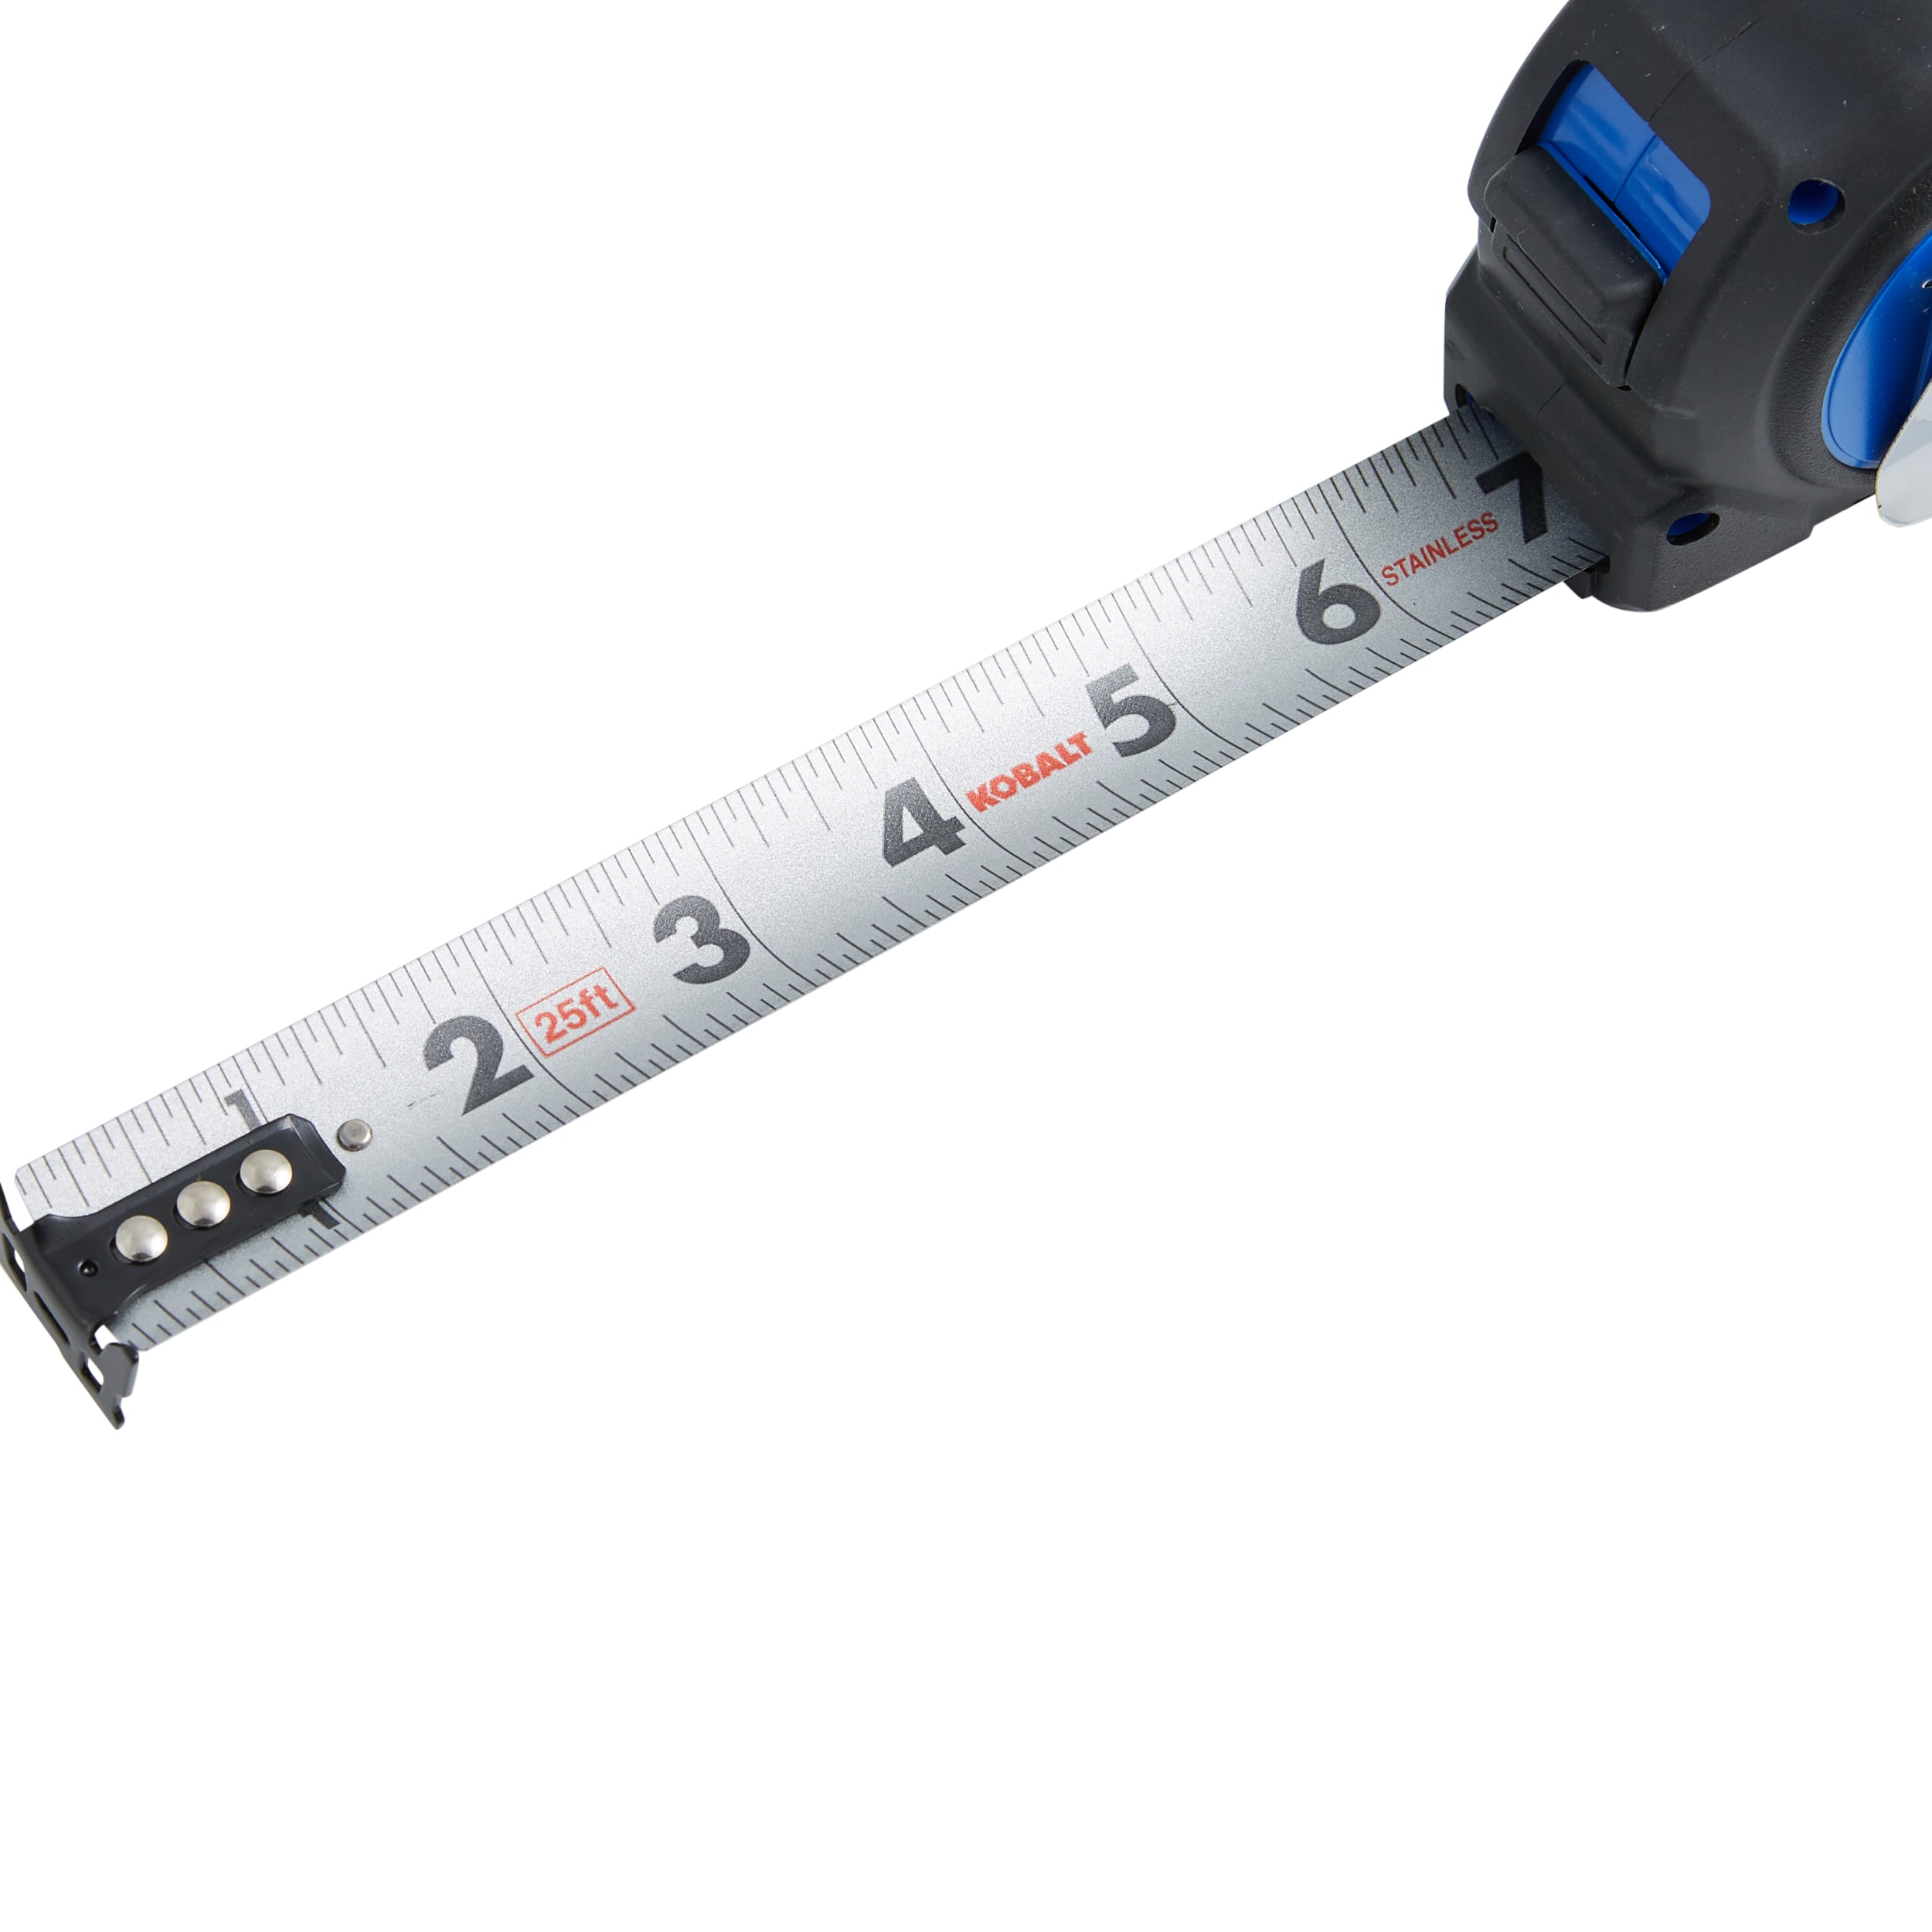 Flexible Steel Tape Measure 120cm/47